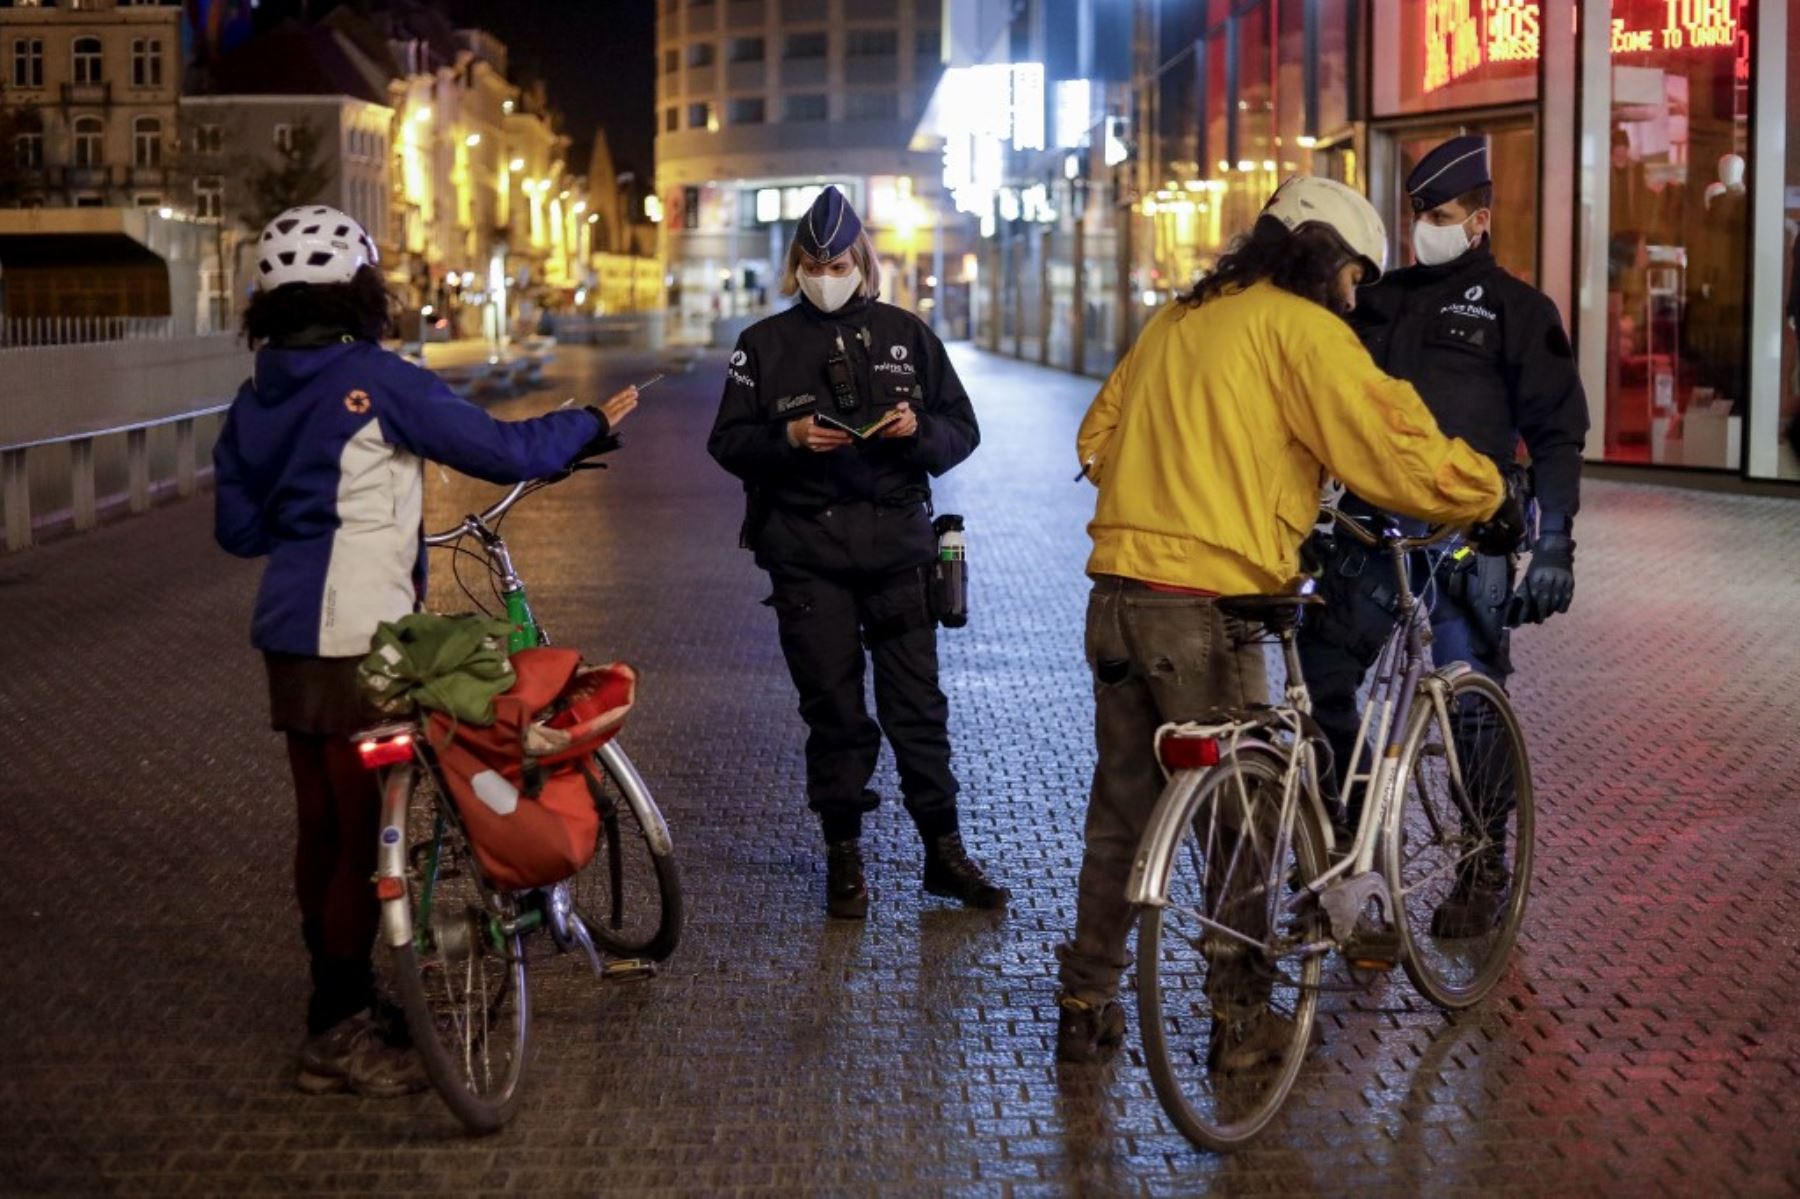 Los agentes de policía que llevan máscaras protectoras controlan a las personas que andan en bicicleta mientras patrullan al inicio del toque de queda en Bruselas como medida contra la propagación de la pandemia COVID-19 causada por el nuevo coronavirus. Foto: AFP